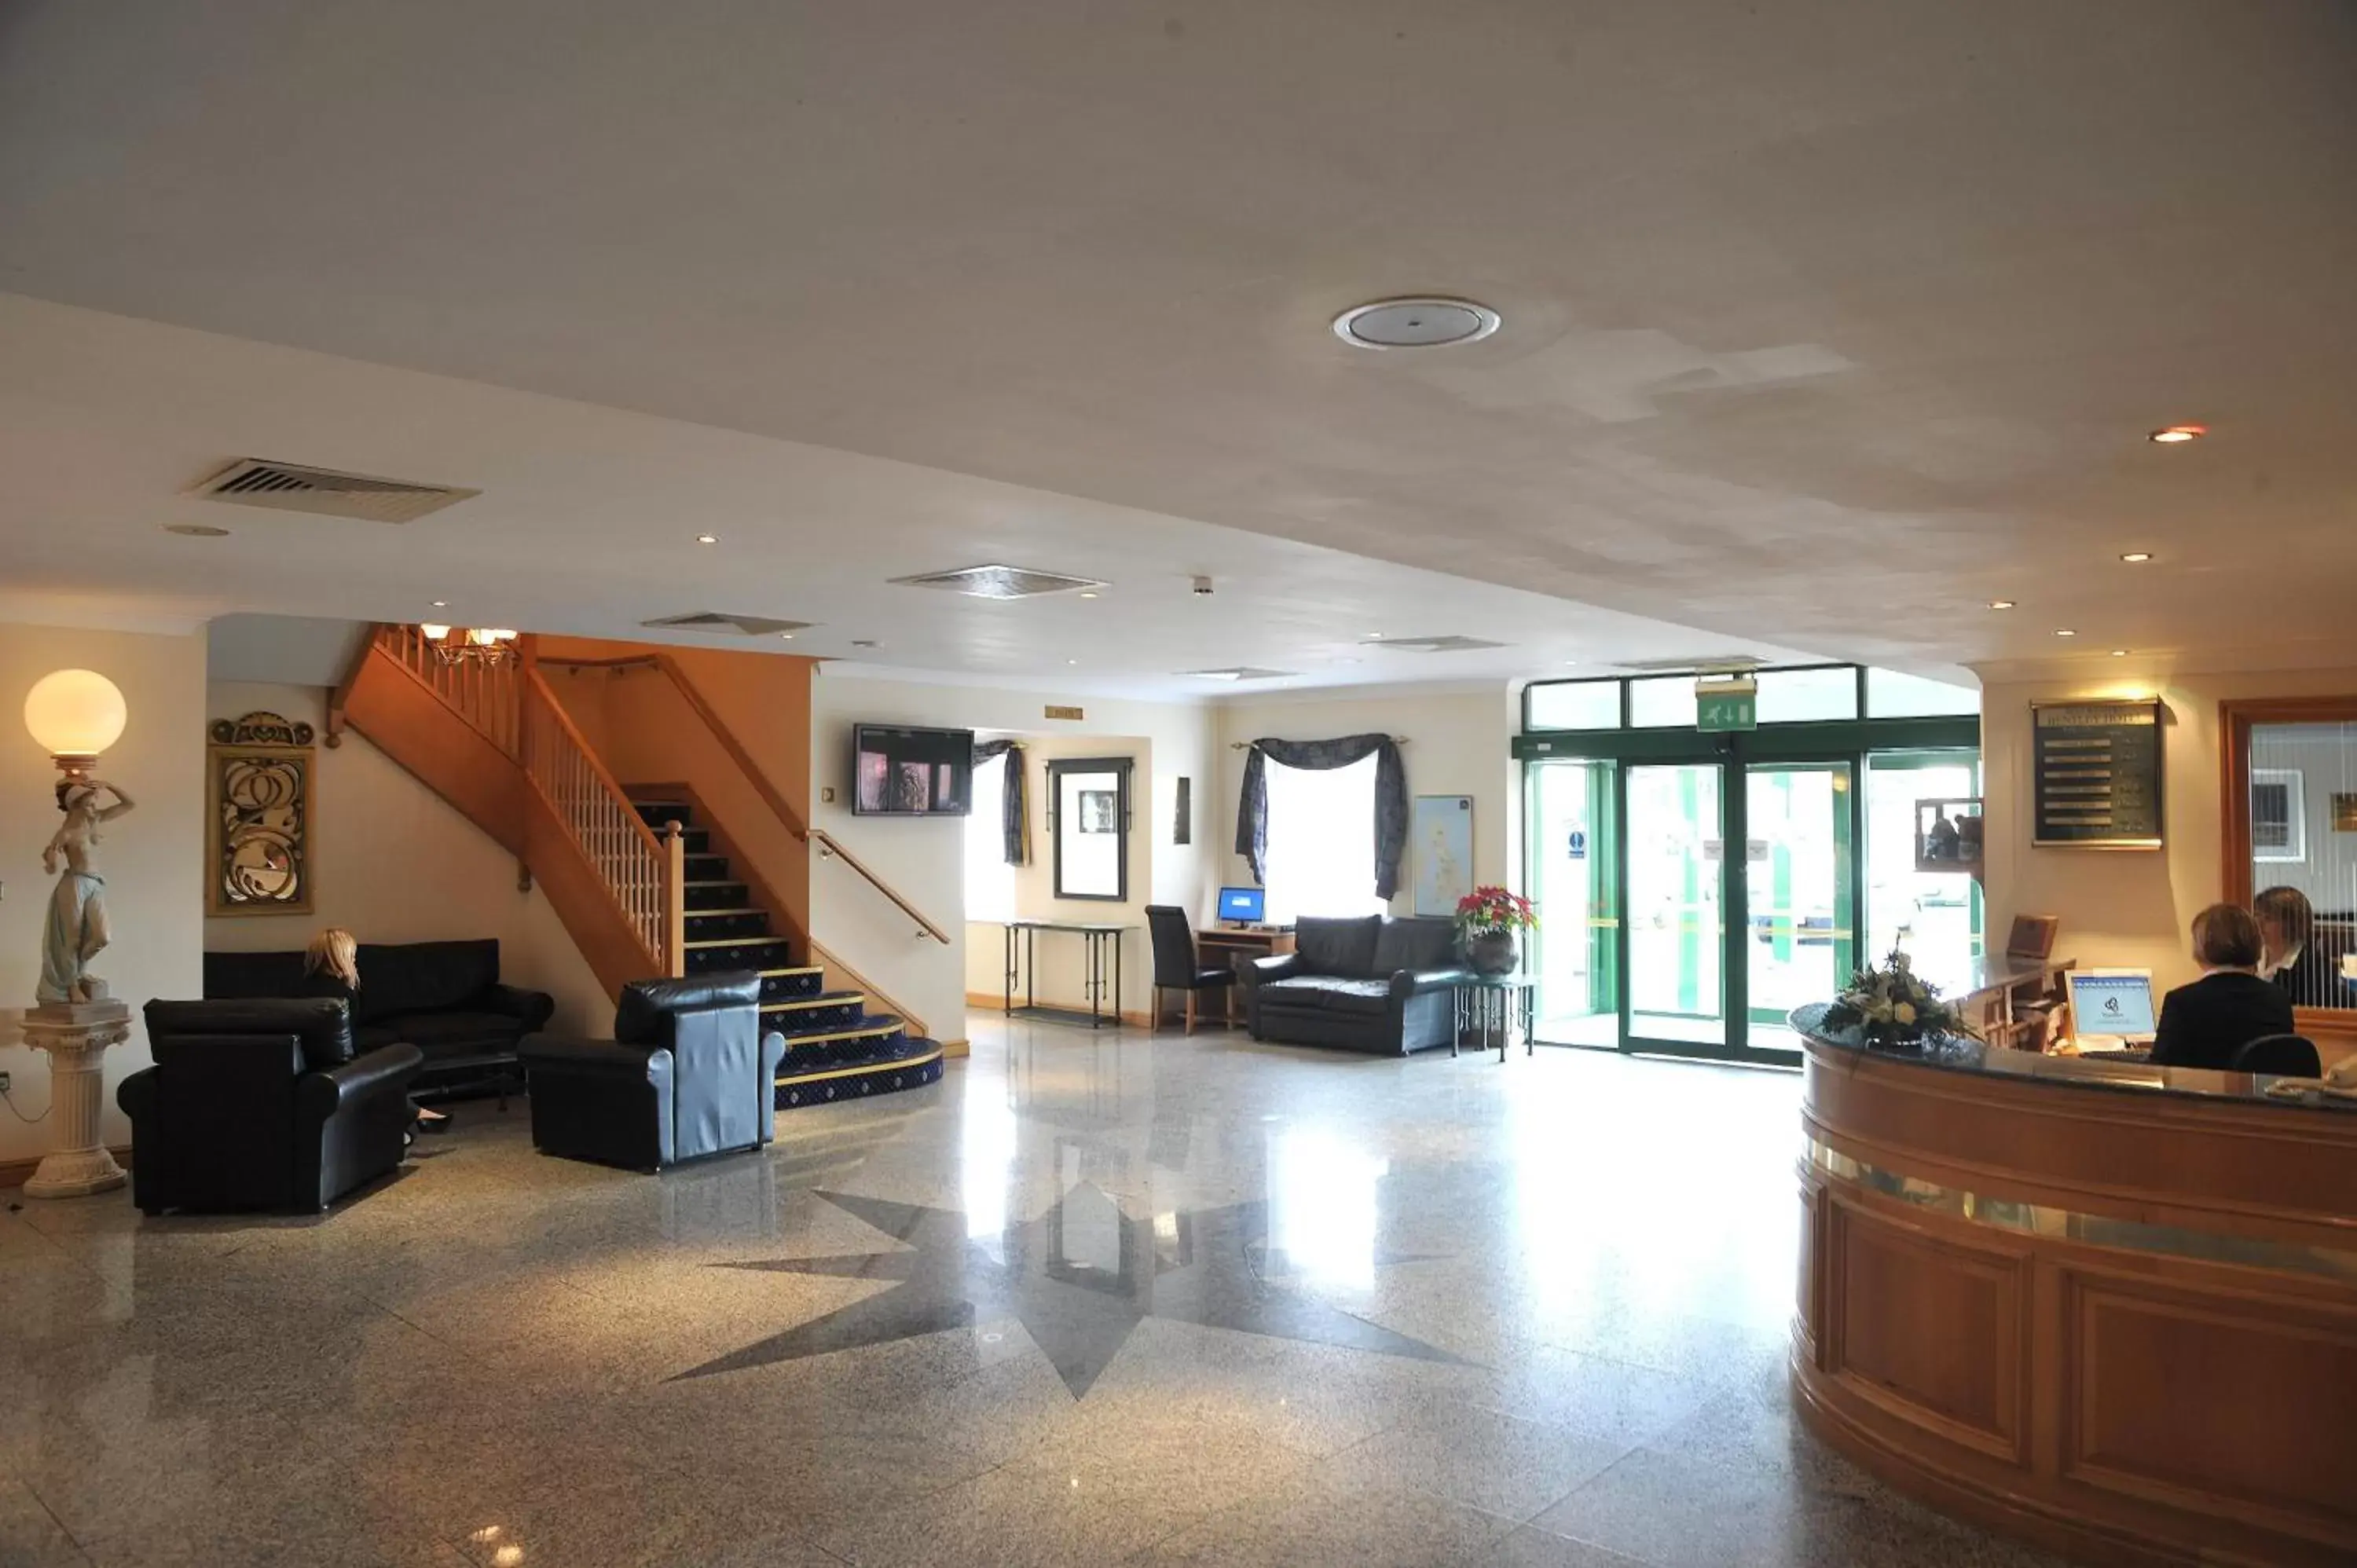 Lobby or reception, Lobby/Reception in Best Western Plus Bentley Hotel, Leisure Club & Spa